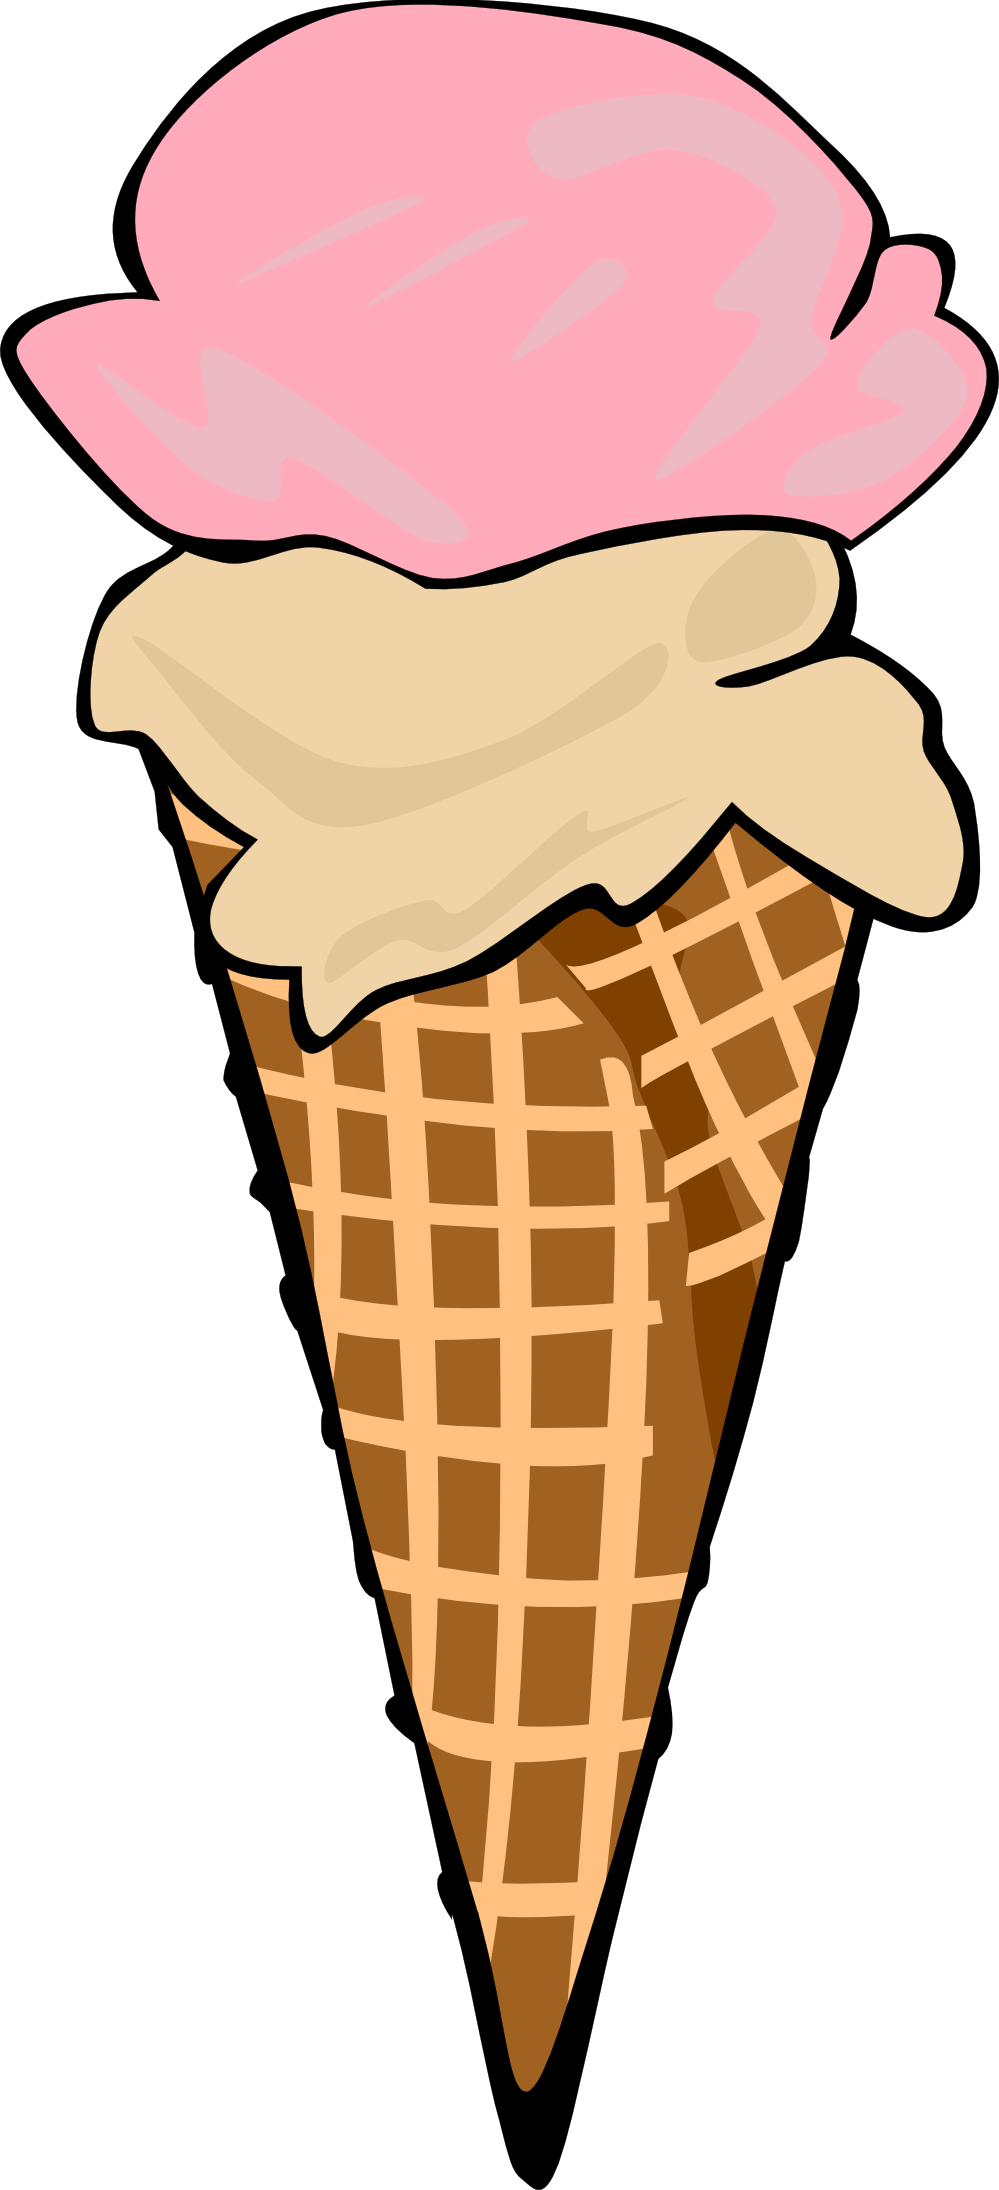 ice cream cone clipart black and white - photo #49